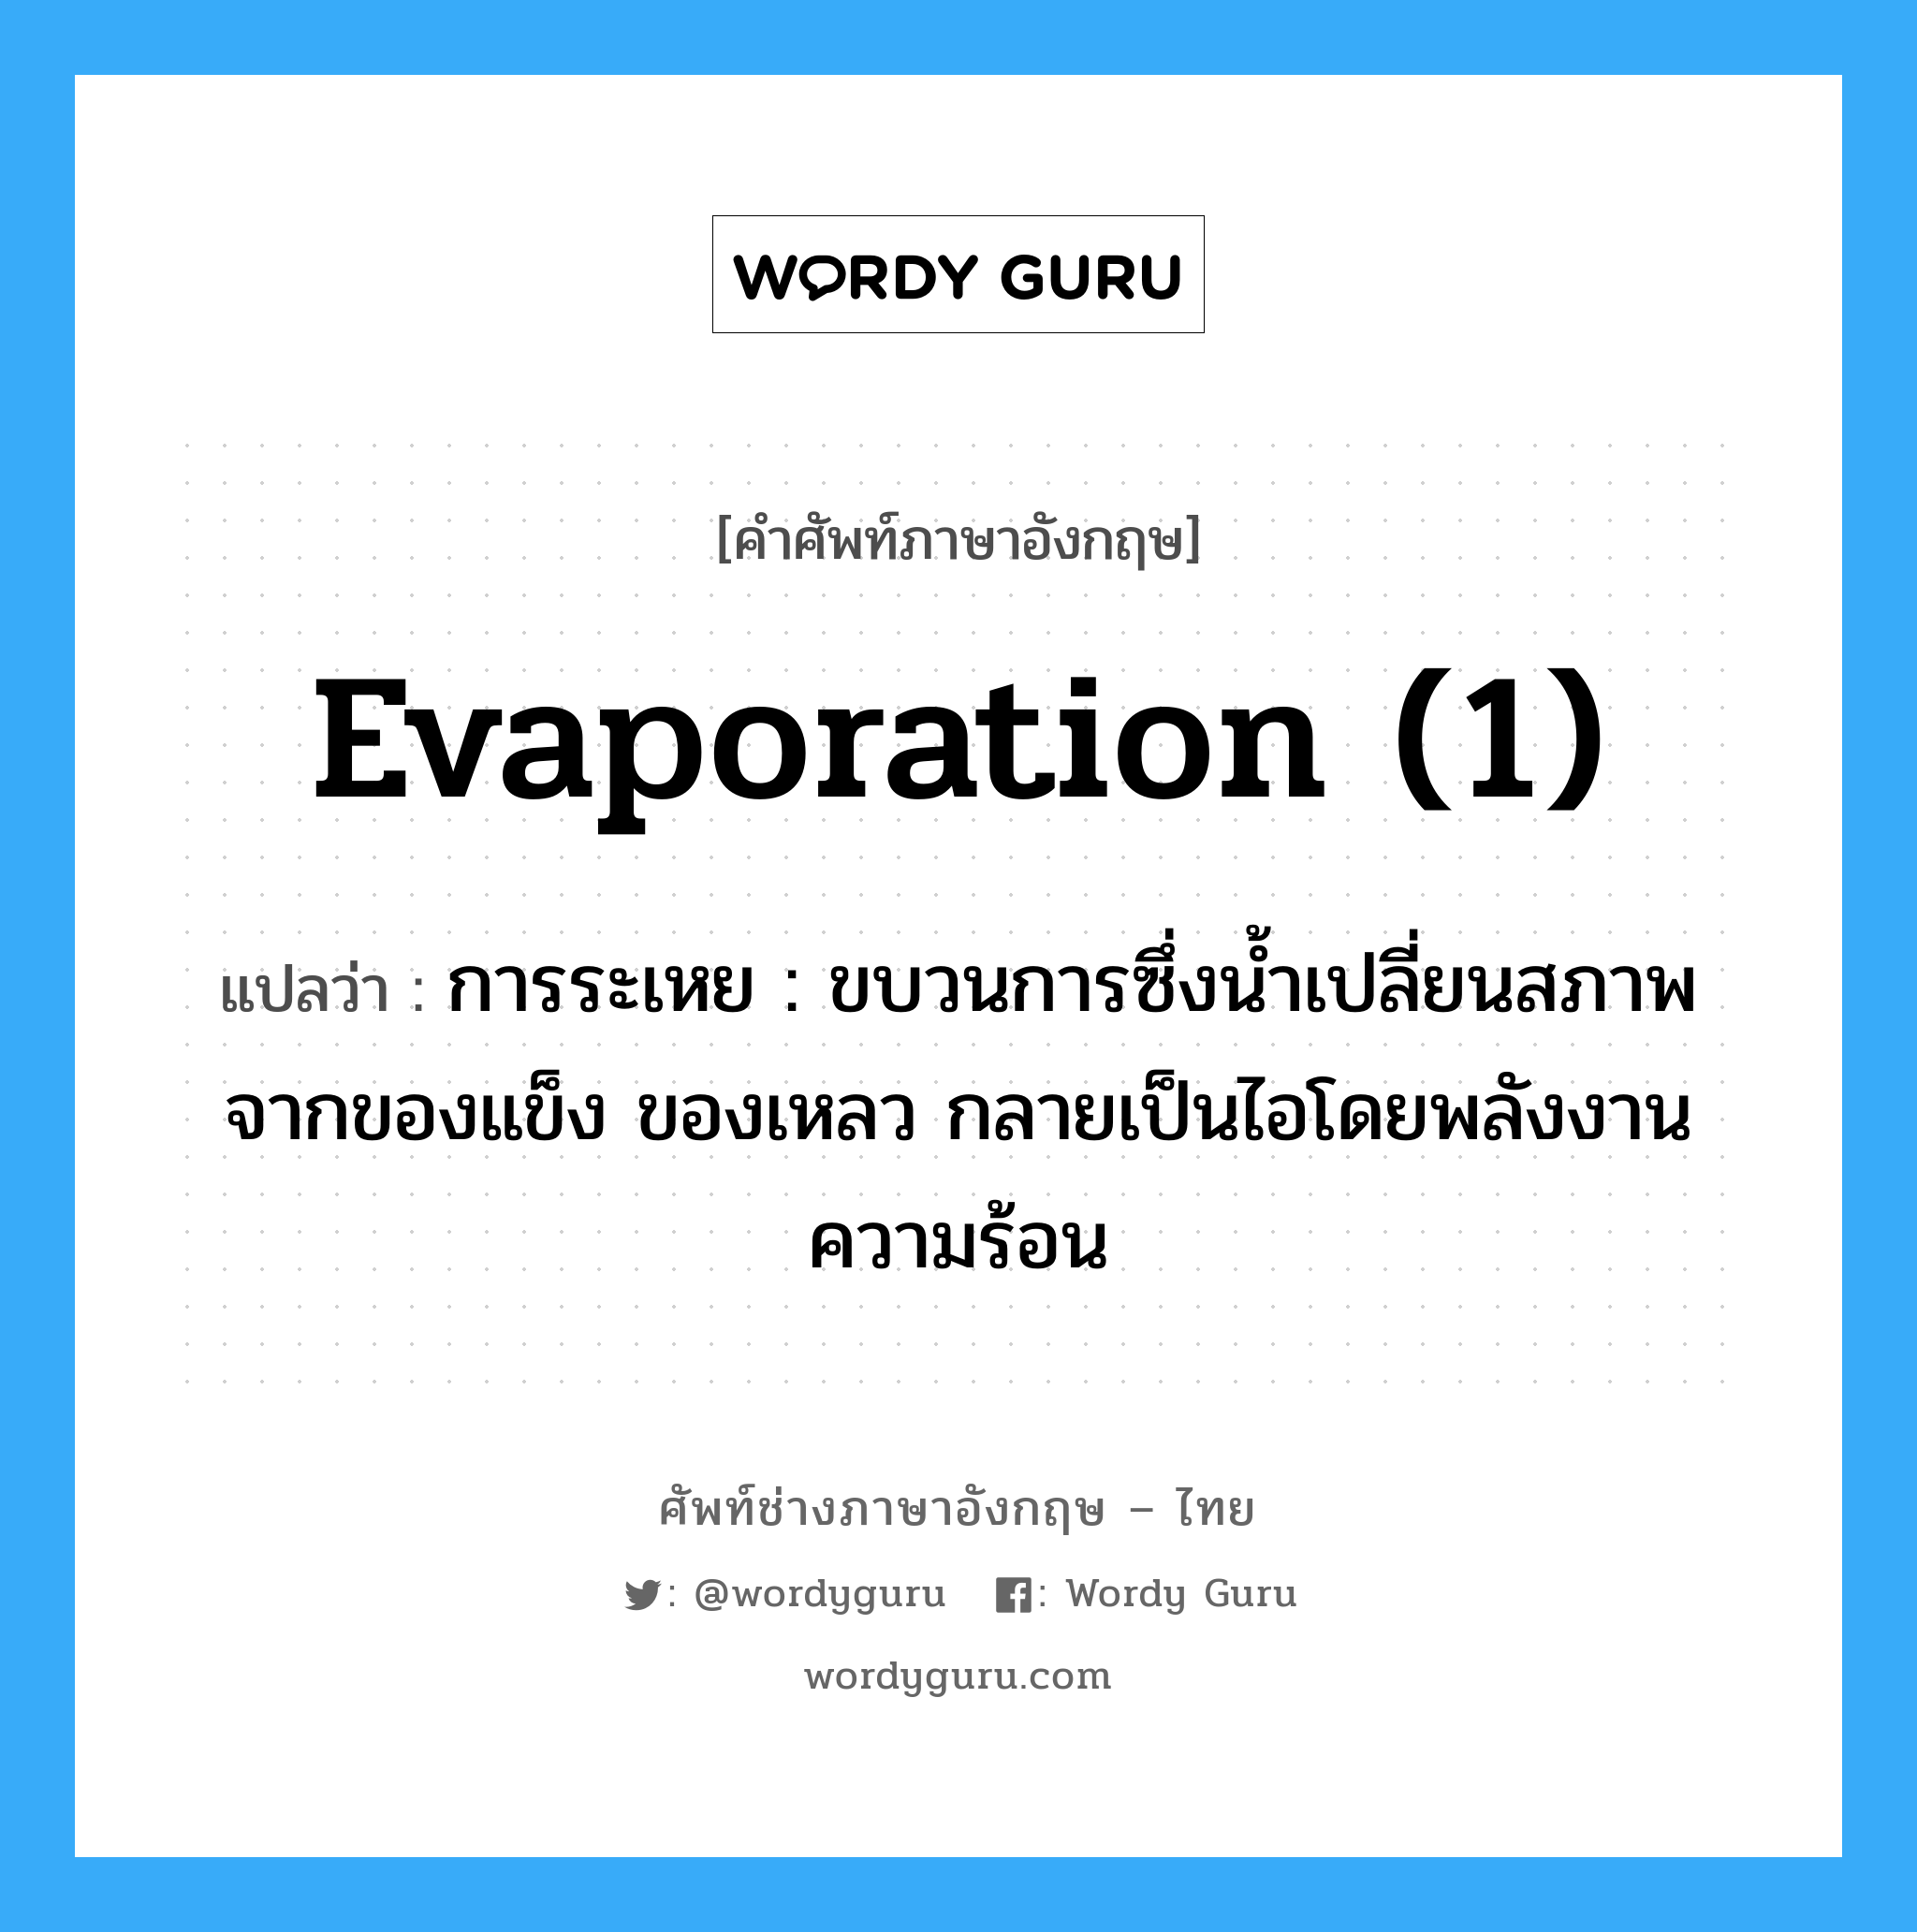 evaporation (1) แปลว่า?, คำศัพท์ช่างภาษาอังกฤษ - ไทย evaporation (1) คำศัพท์ภาษาอังกฤษ evaporation (1) แปลว่า การระเหย : ขบวนการซึ่งน้ำเปลี่ยนสภาพจากของแข็ง ของเหลว กลายเป็นไอโดยพลังงานความร้อน